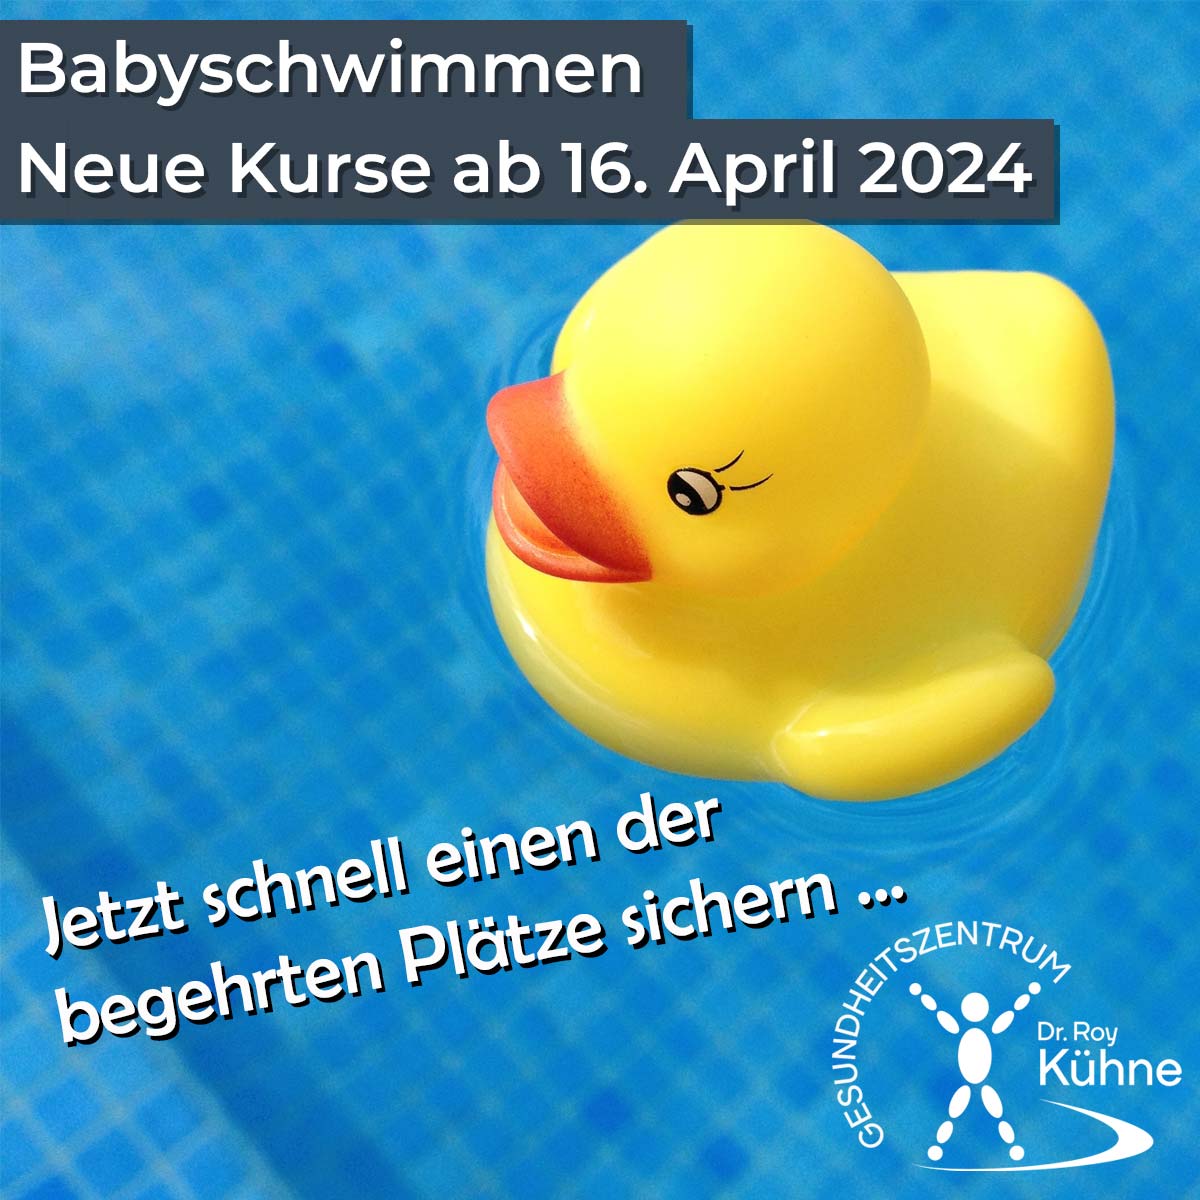 Babyschwimmen im Gesundheitszentrum Dr. Roy Kühne